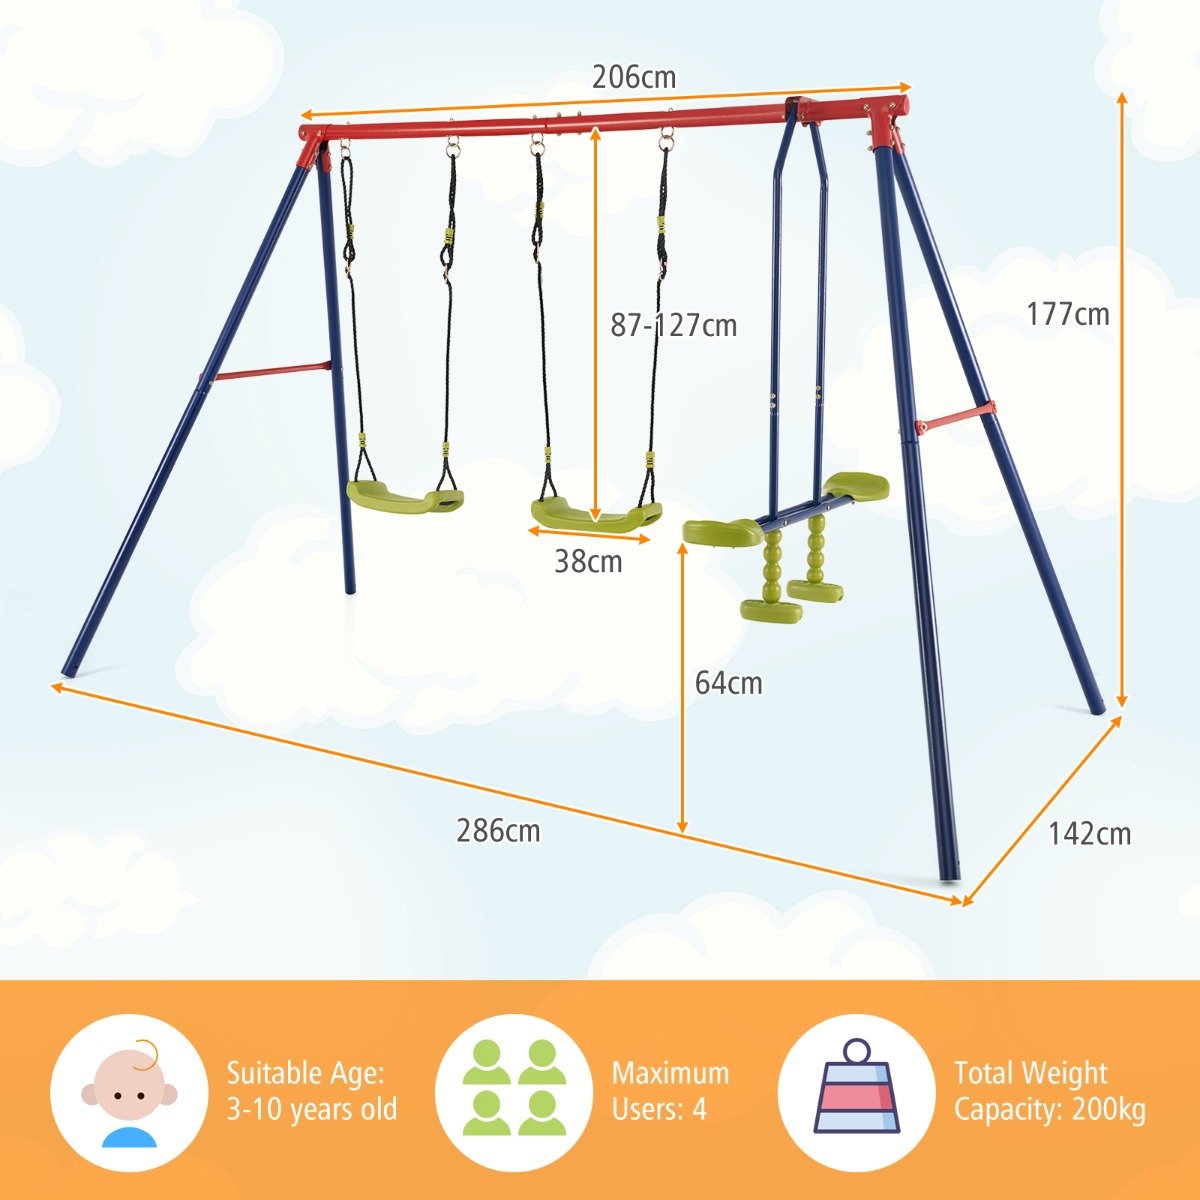 Height-Adjustable 2-in-1 Swing Set: Versatile Fun for Children